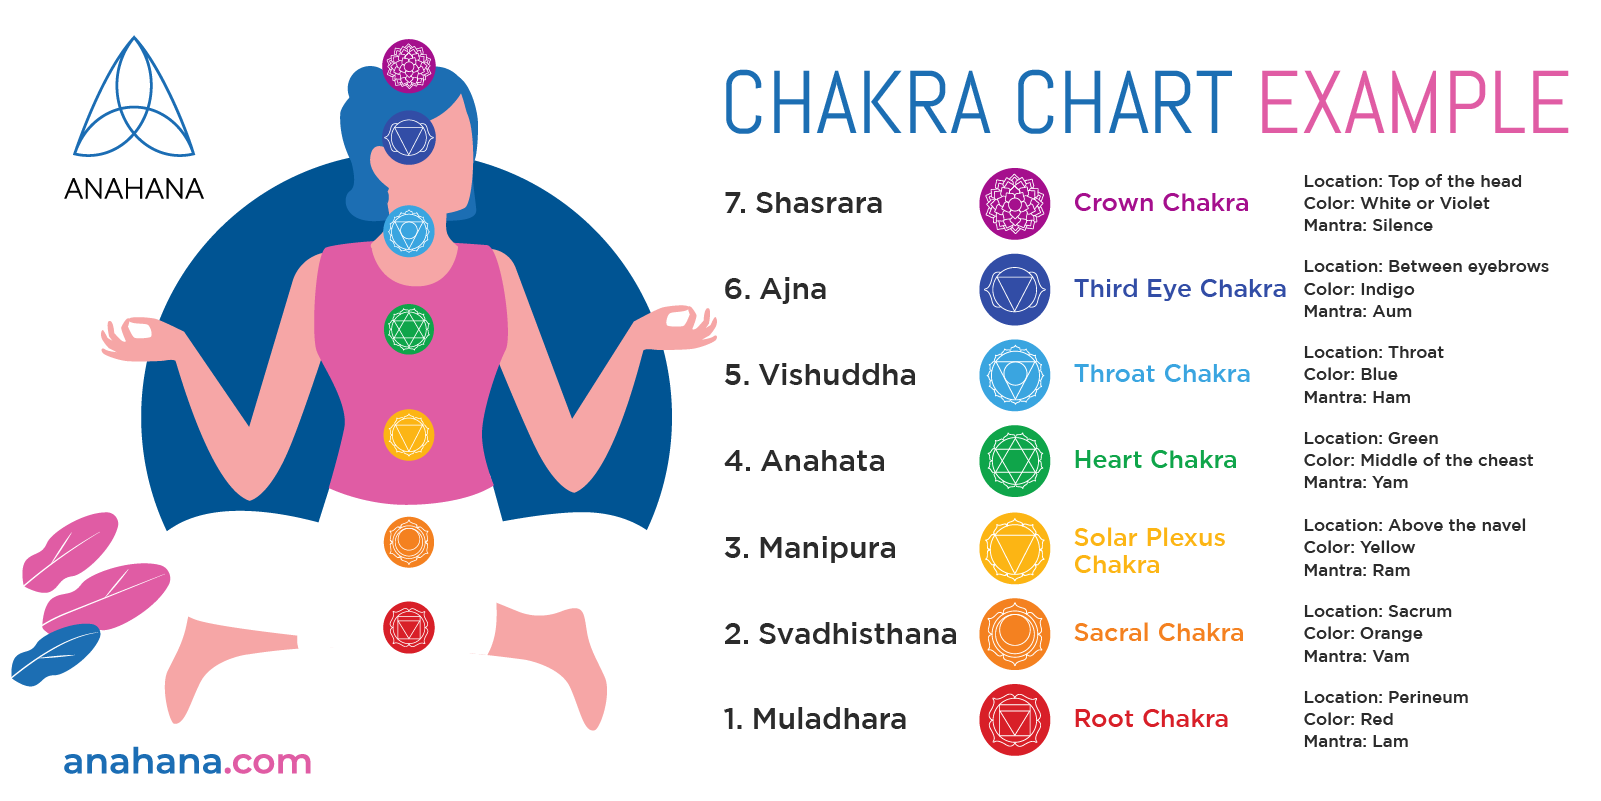 Beispiel für ein Chakra-Diagramm